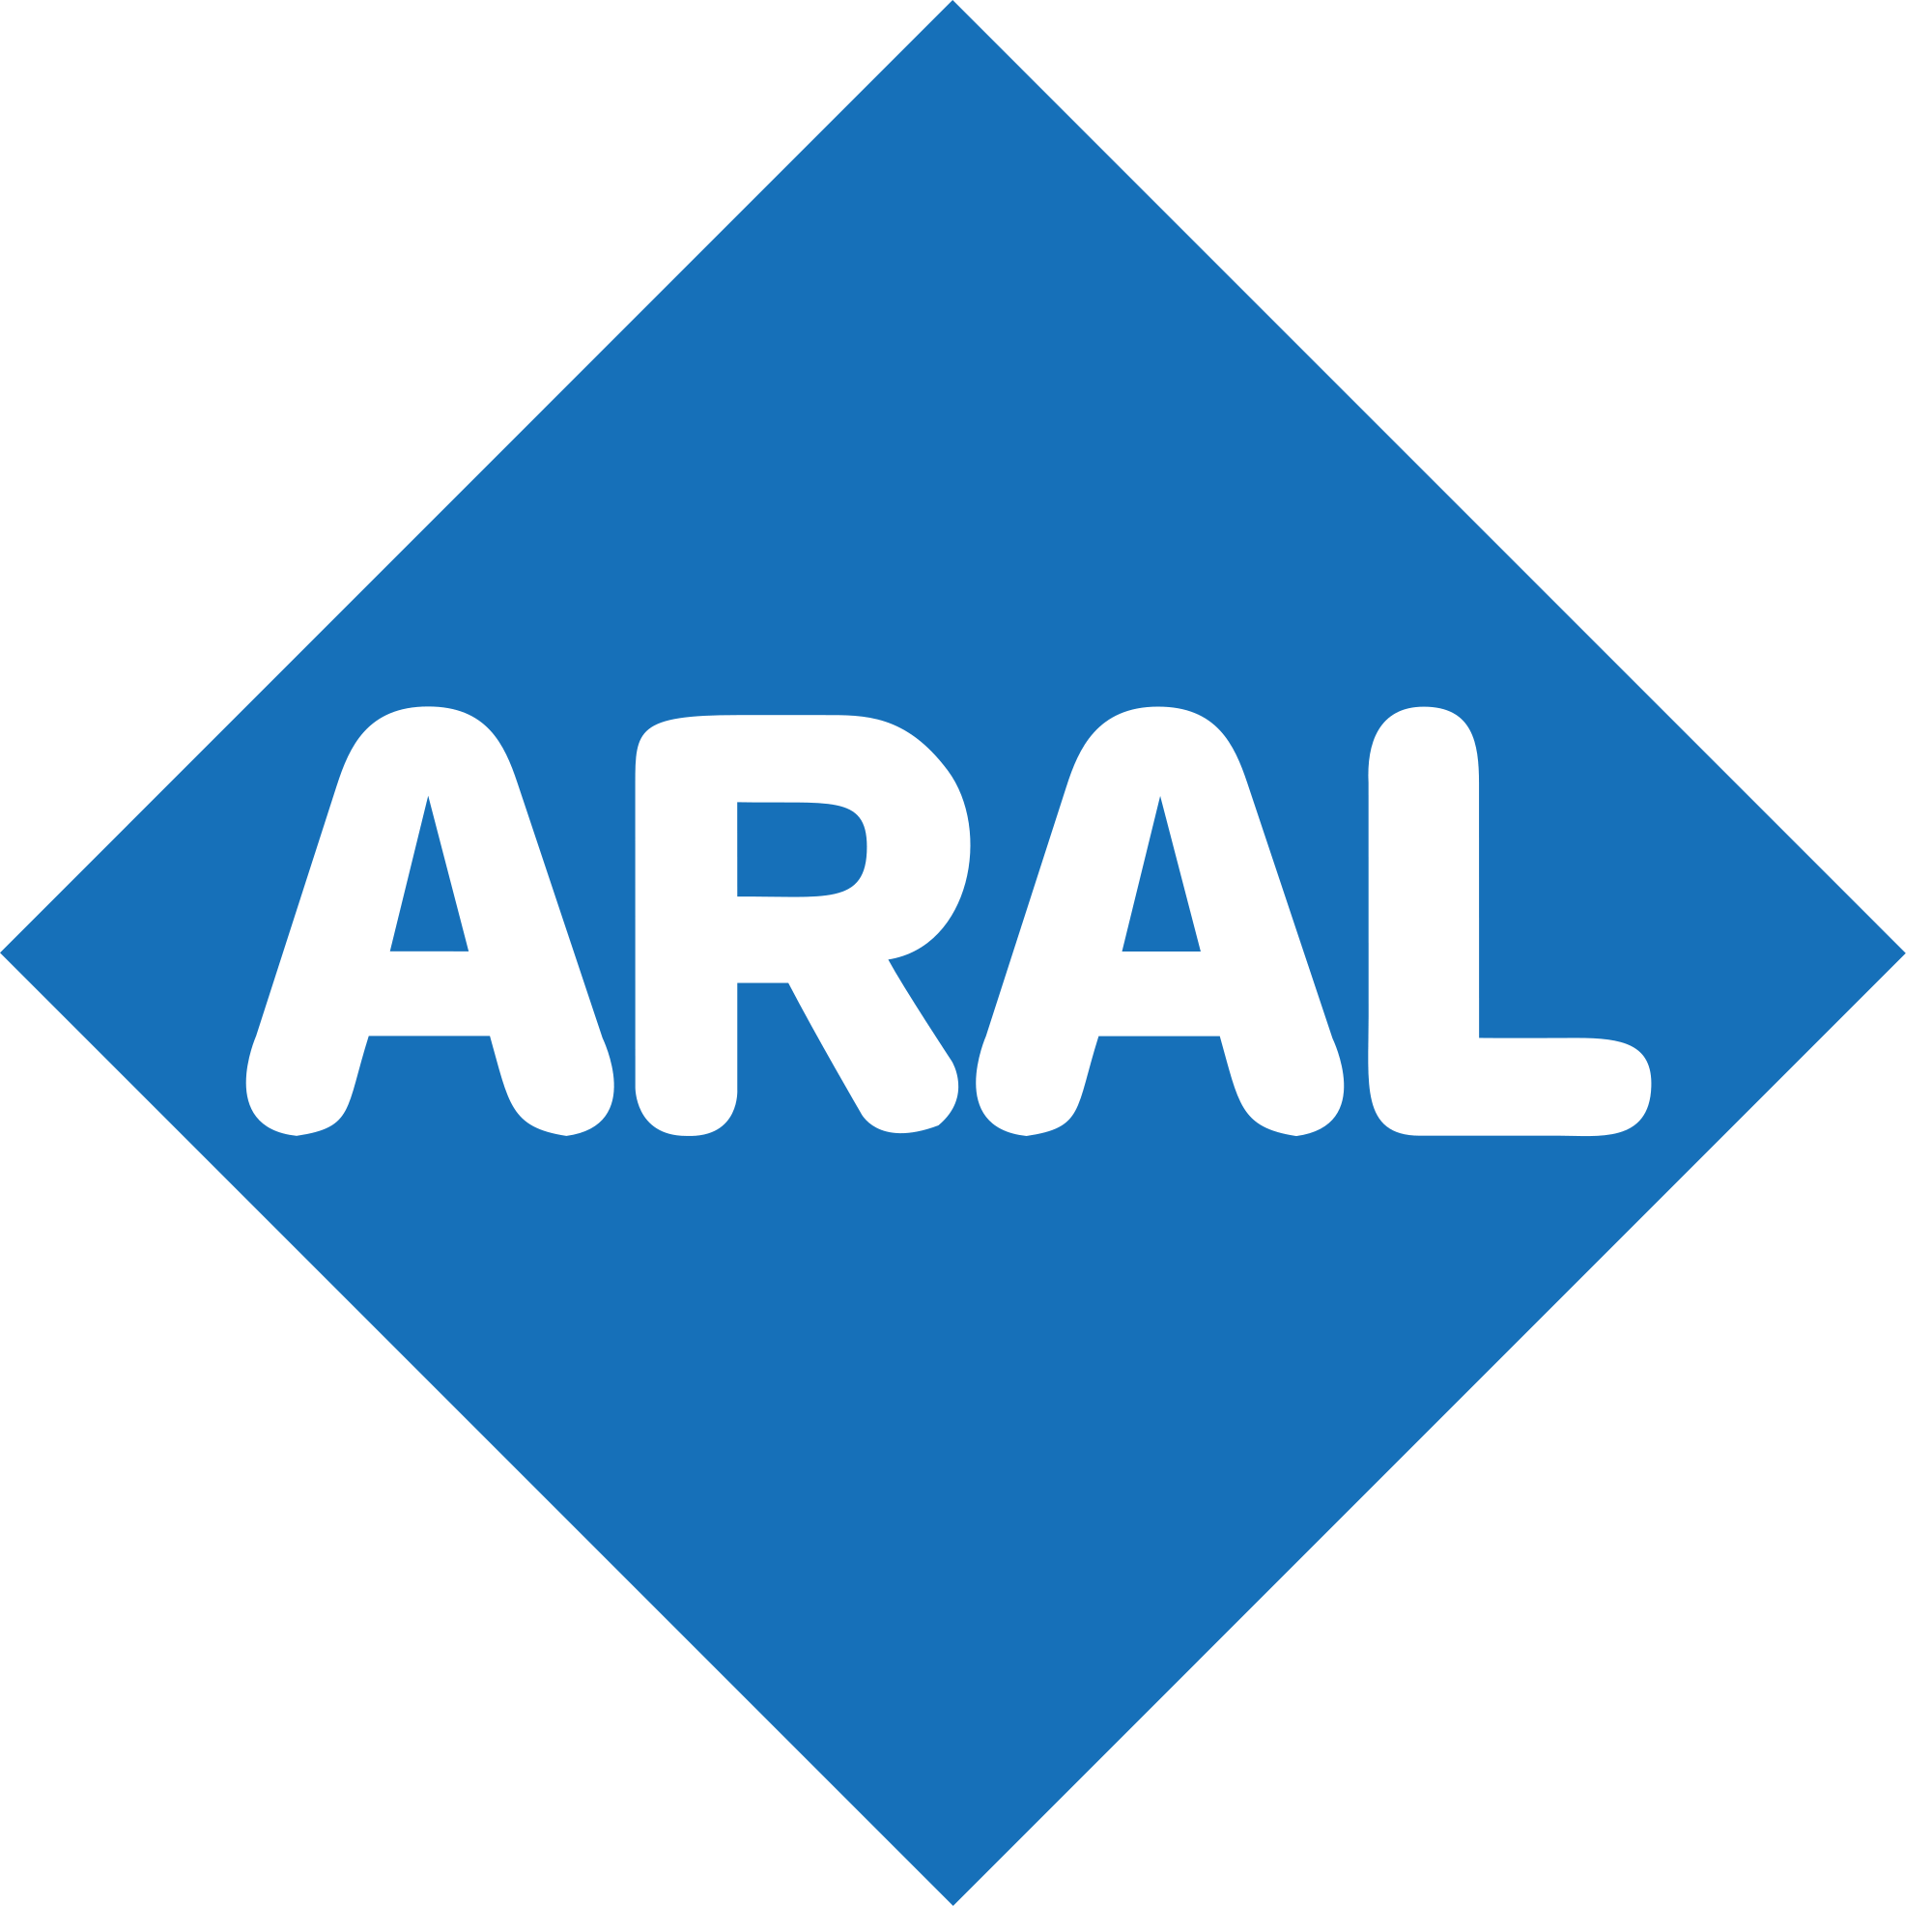 ARAL logo, logotype